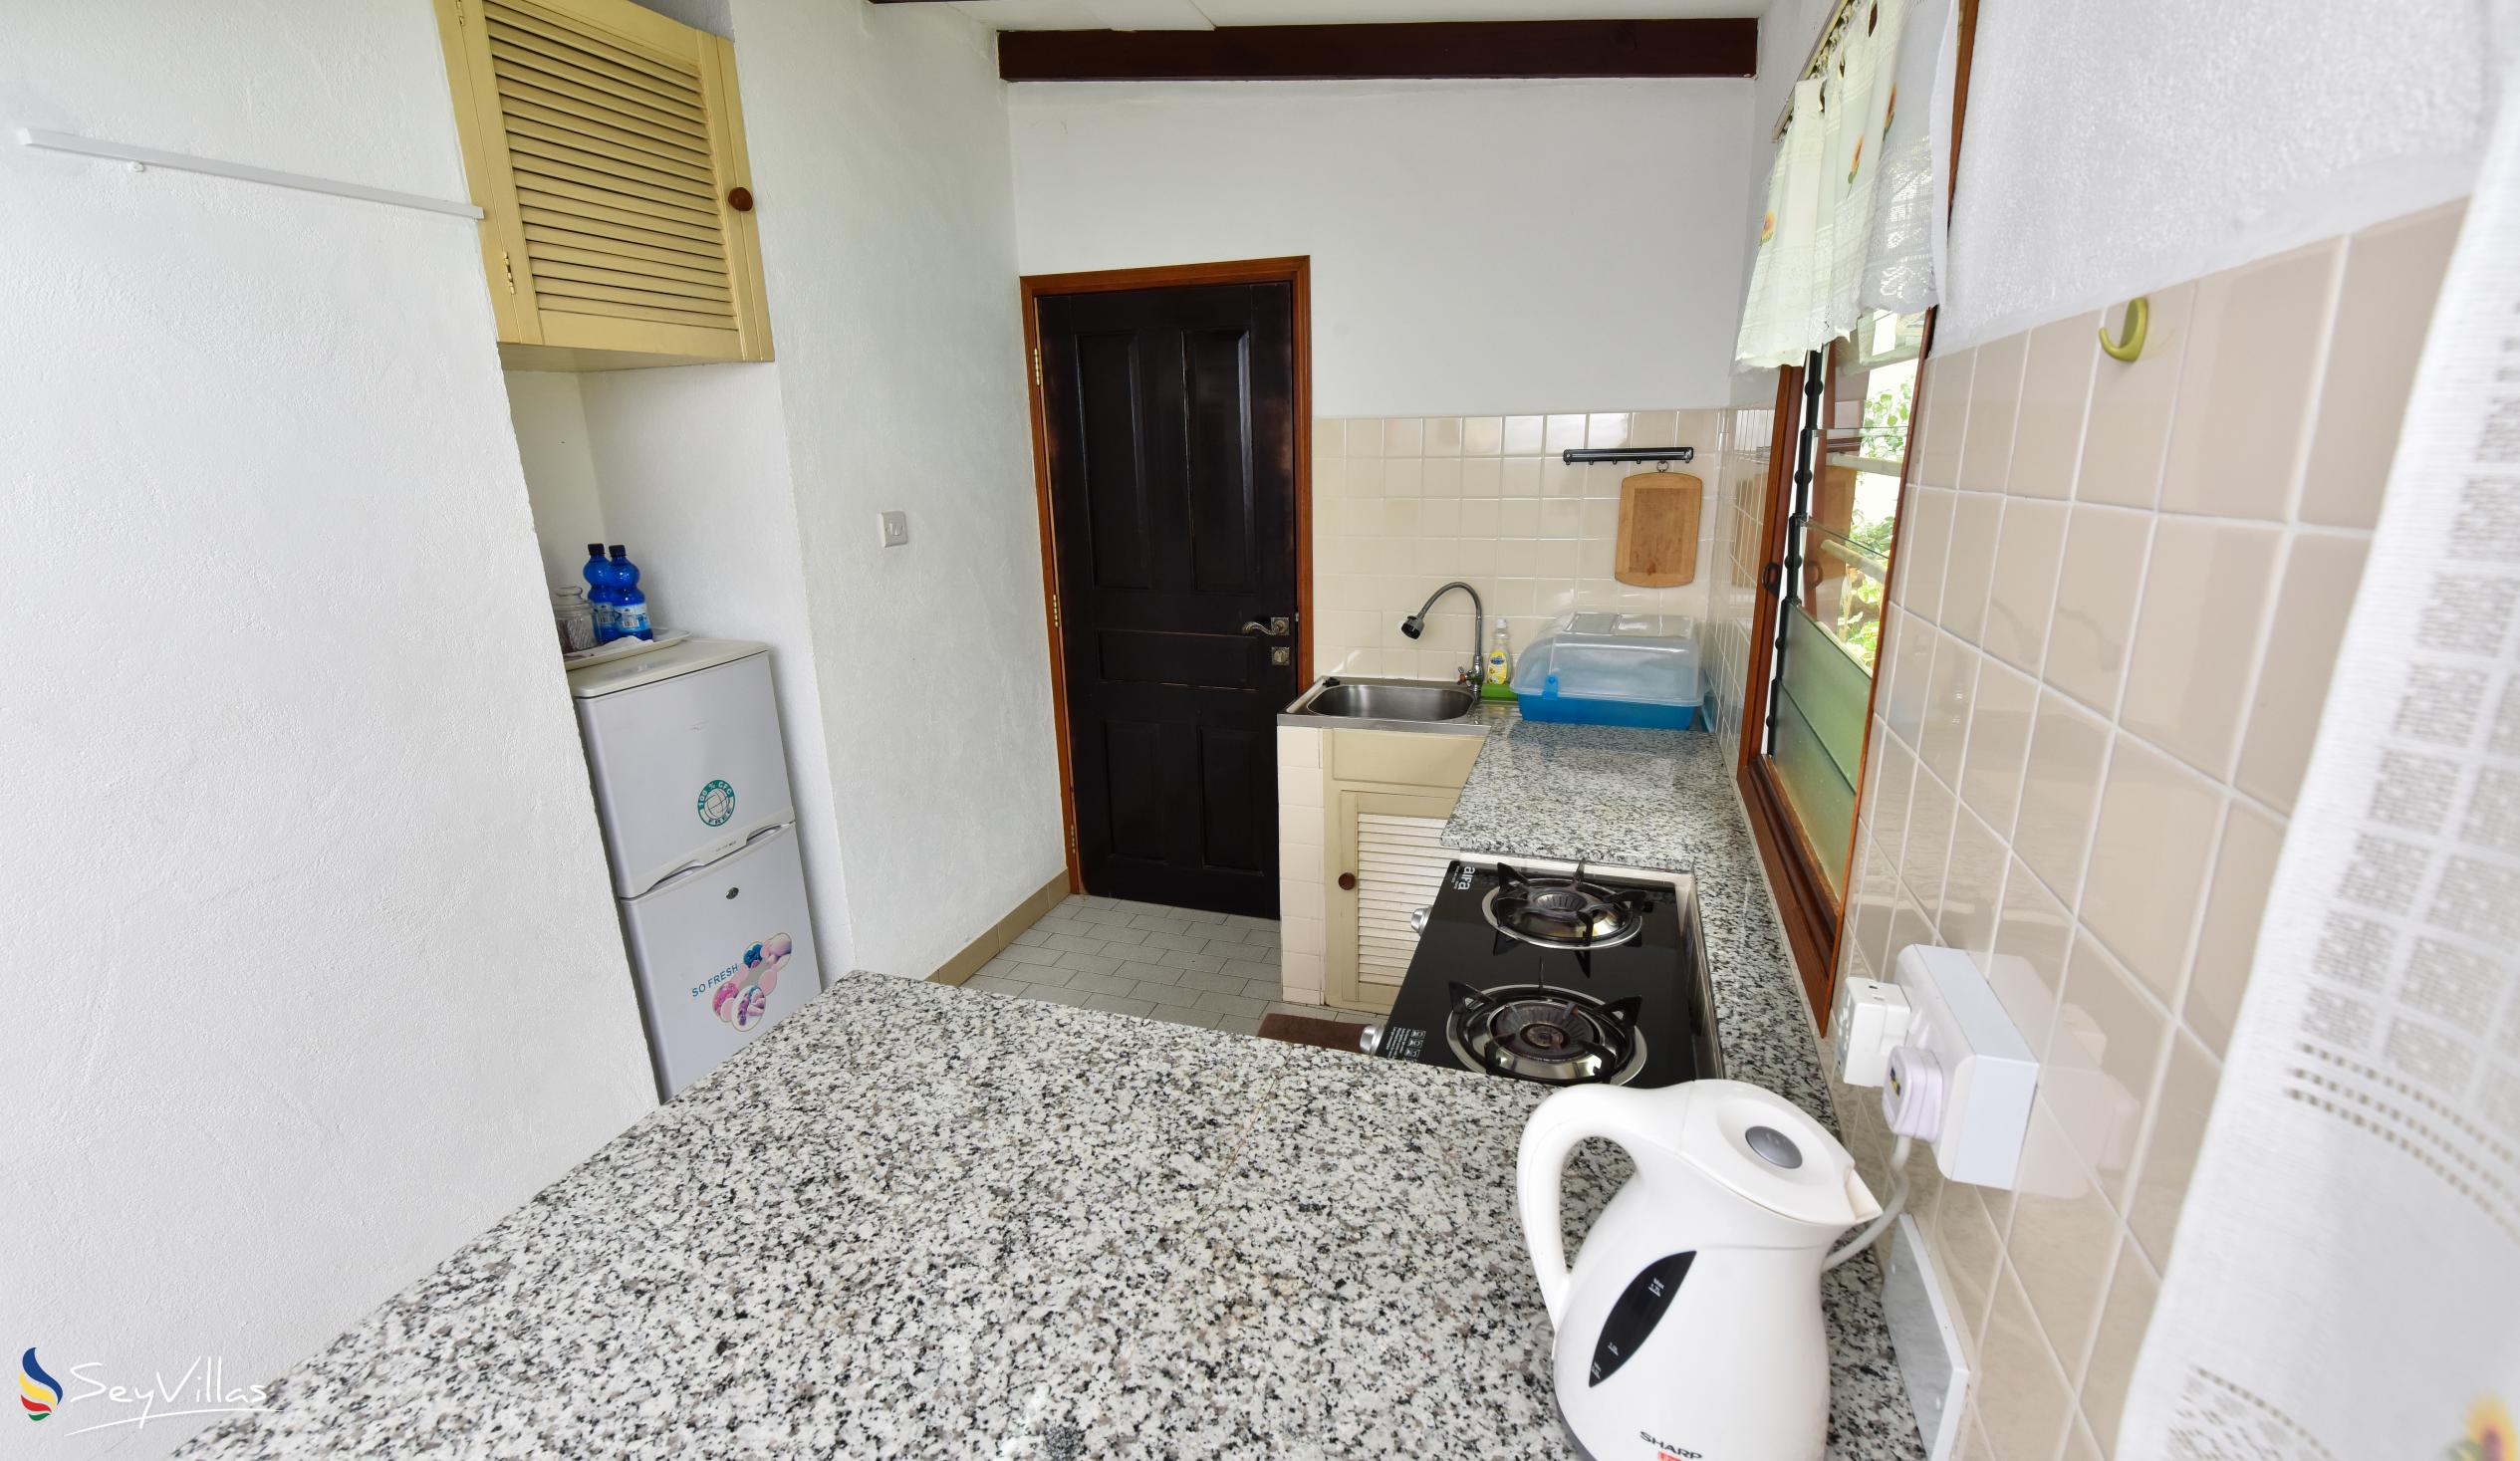 Foto 16: Anse Norwa Self Catering - Appartamento a pianterreno (Bonito) - Mahé (Seychelles)